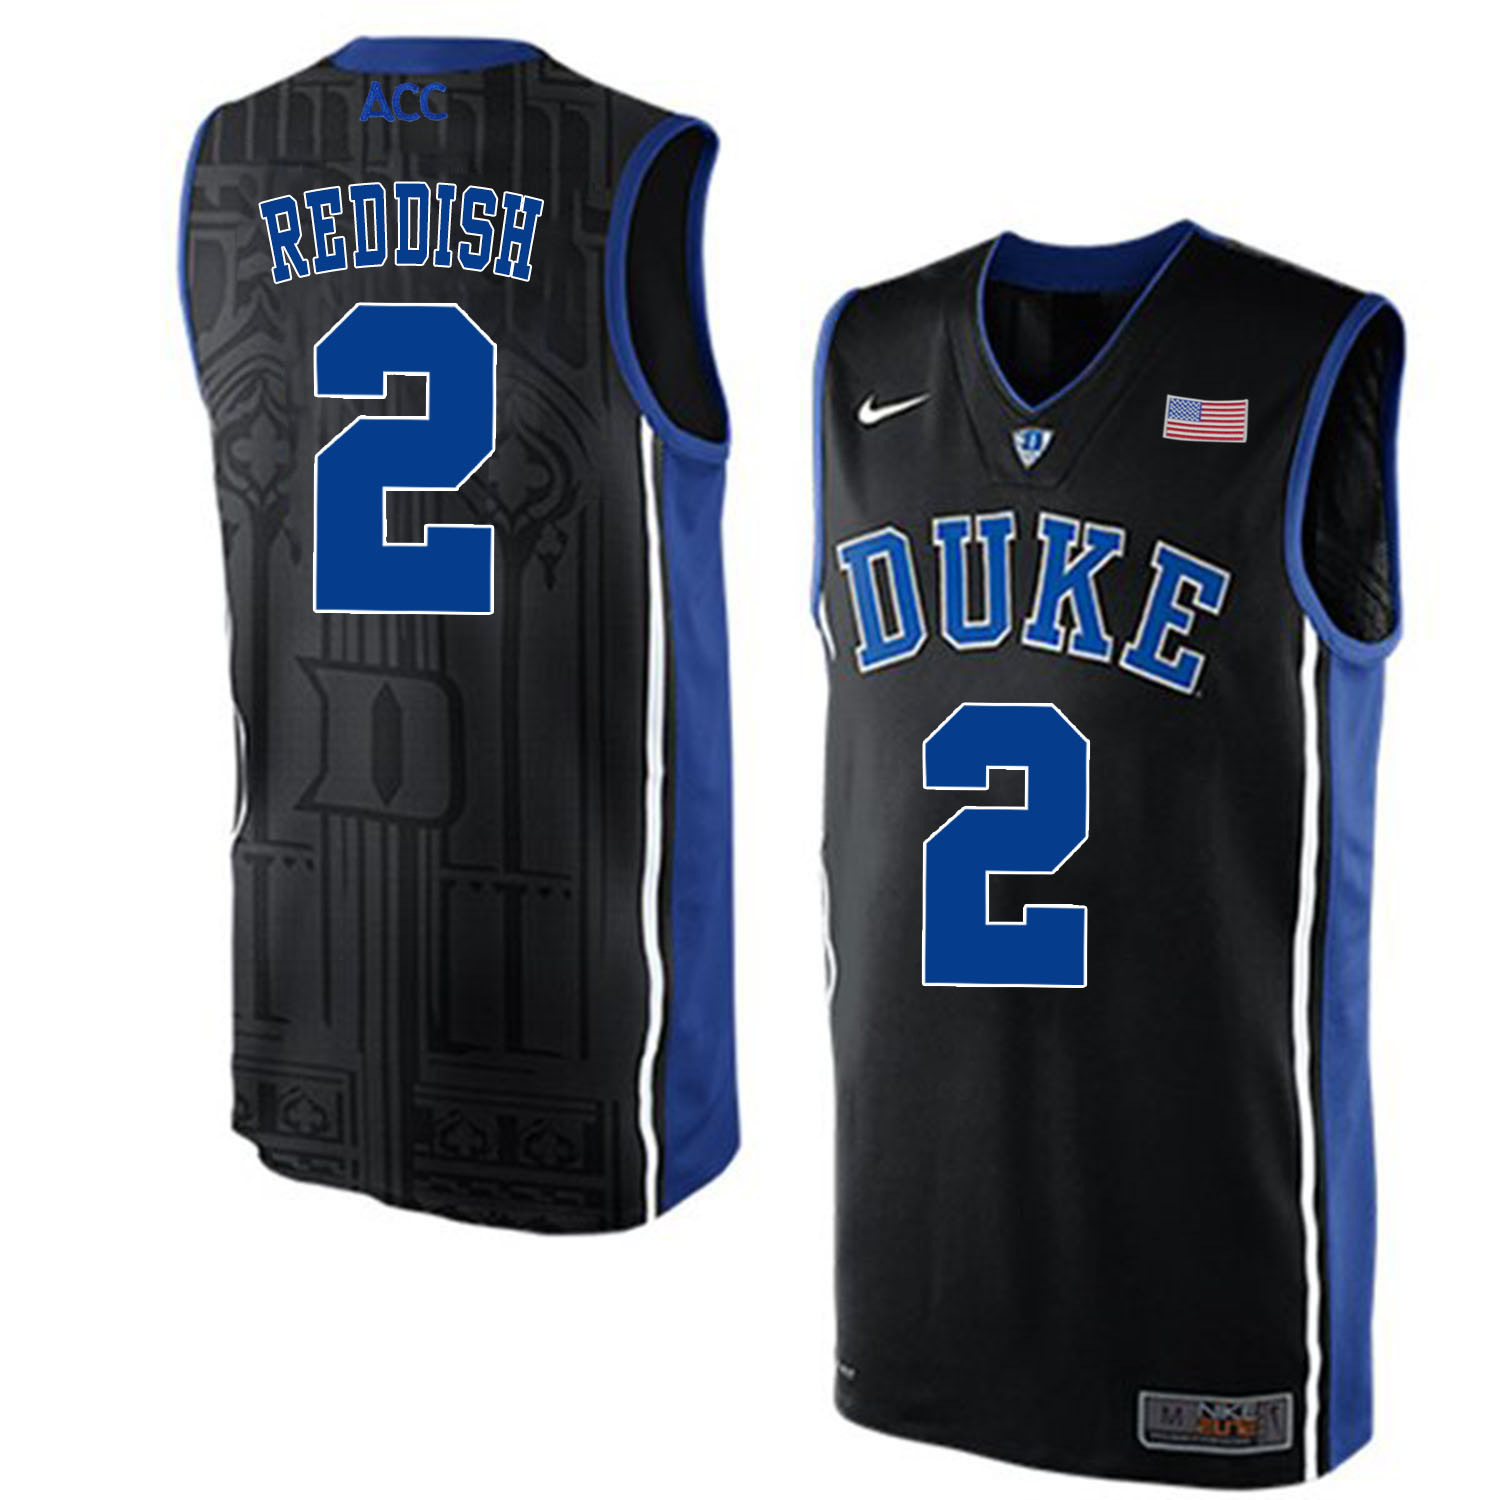 Duke Blue Devils 2 Cameron Reddish Black Nike Elite Jersey